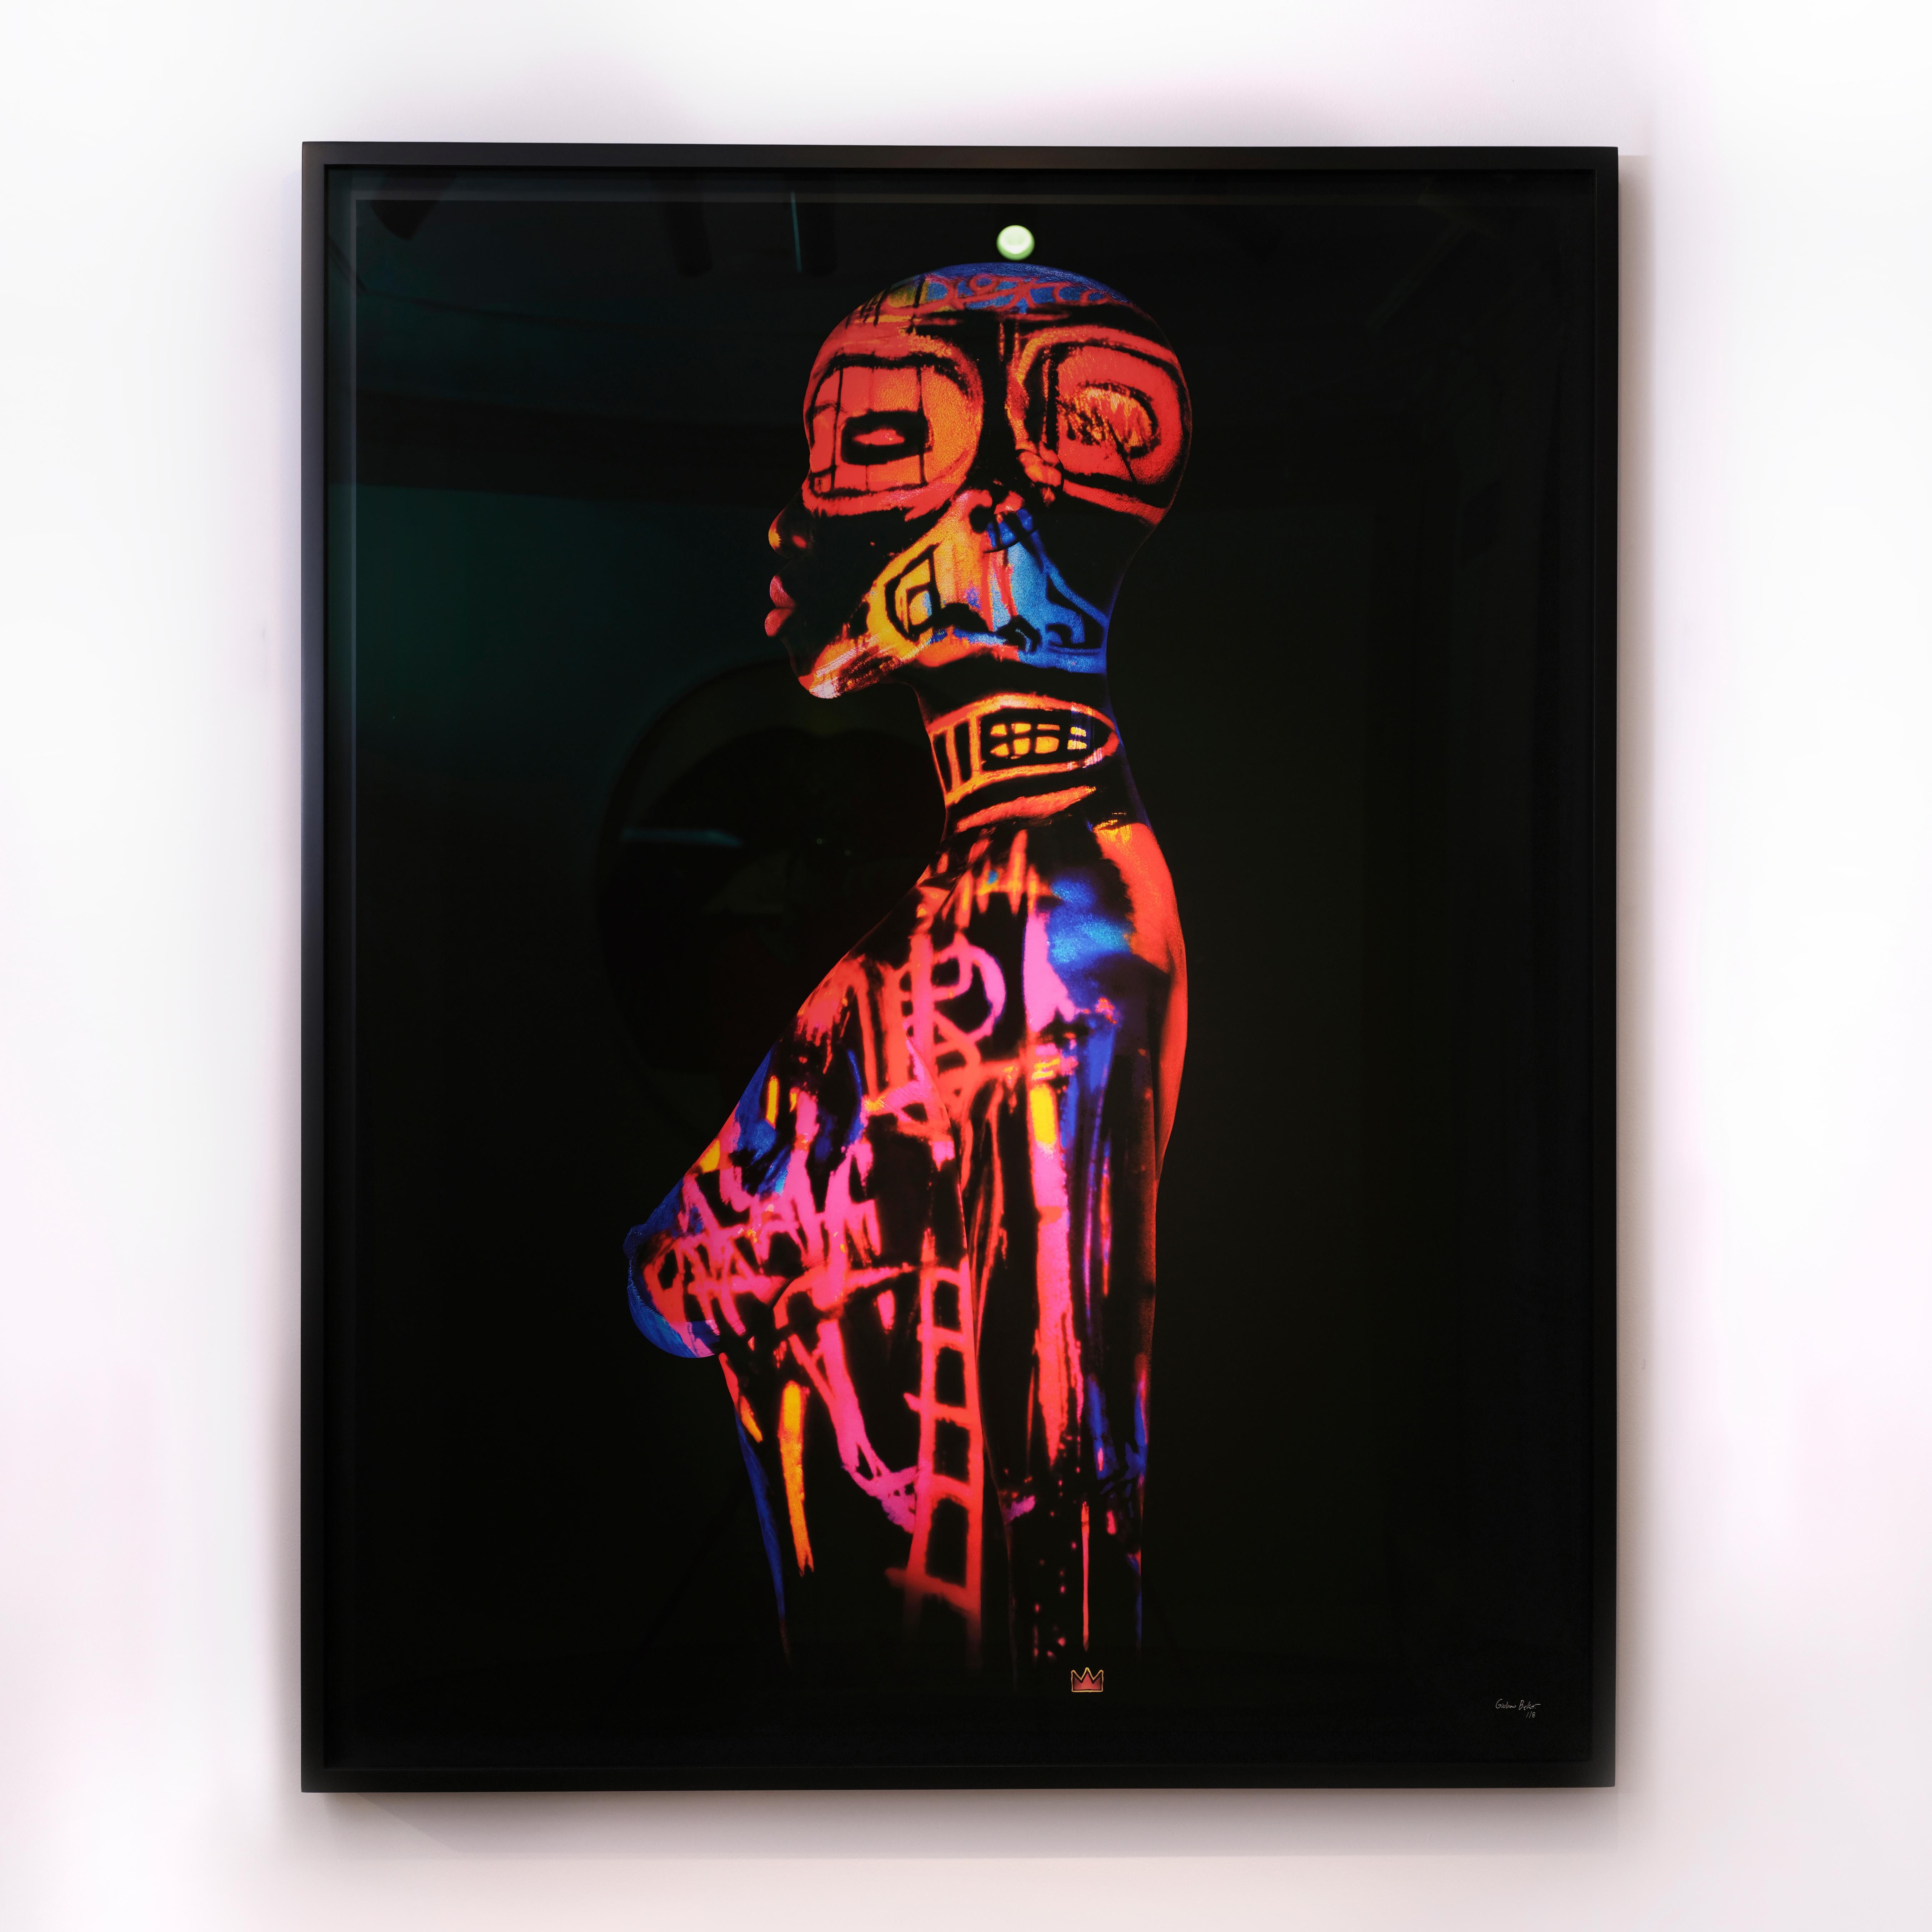 «JM Basquiat-GB1 » Photographie (FRAMÉE) 50" x 40" pouces Ed. of 8 par Giuliano Bekor

Photographie d'art originale de Giuliano Bekor.
Signé et numéroté par l'artiste.

Titre : Série Basquiat - JMB-GB1 
Année : 2020
Taille d'impression : 50" x 40"